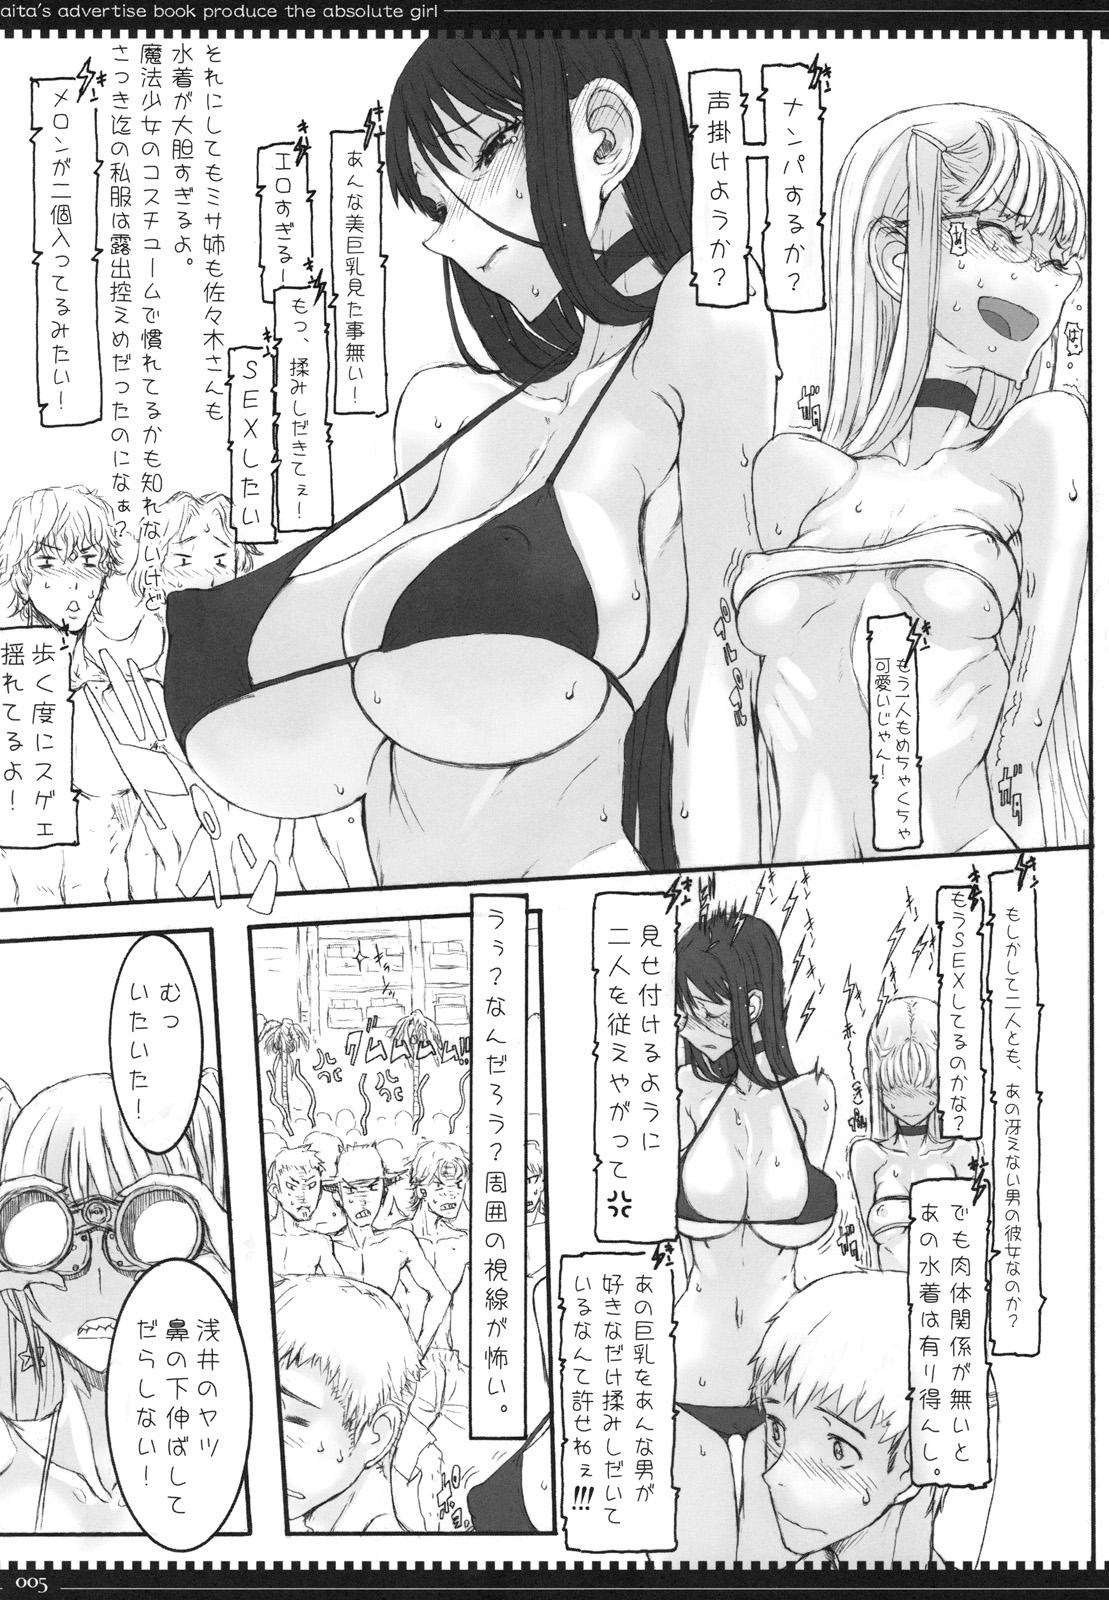 Oral Sex Porn Mahou Shoujo 6.0 - Zettai junpaku mahou shoujo Furry - Page 4